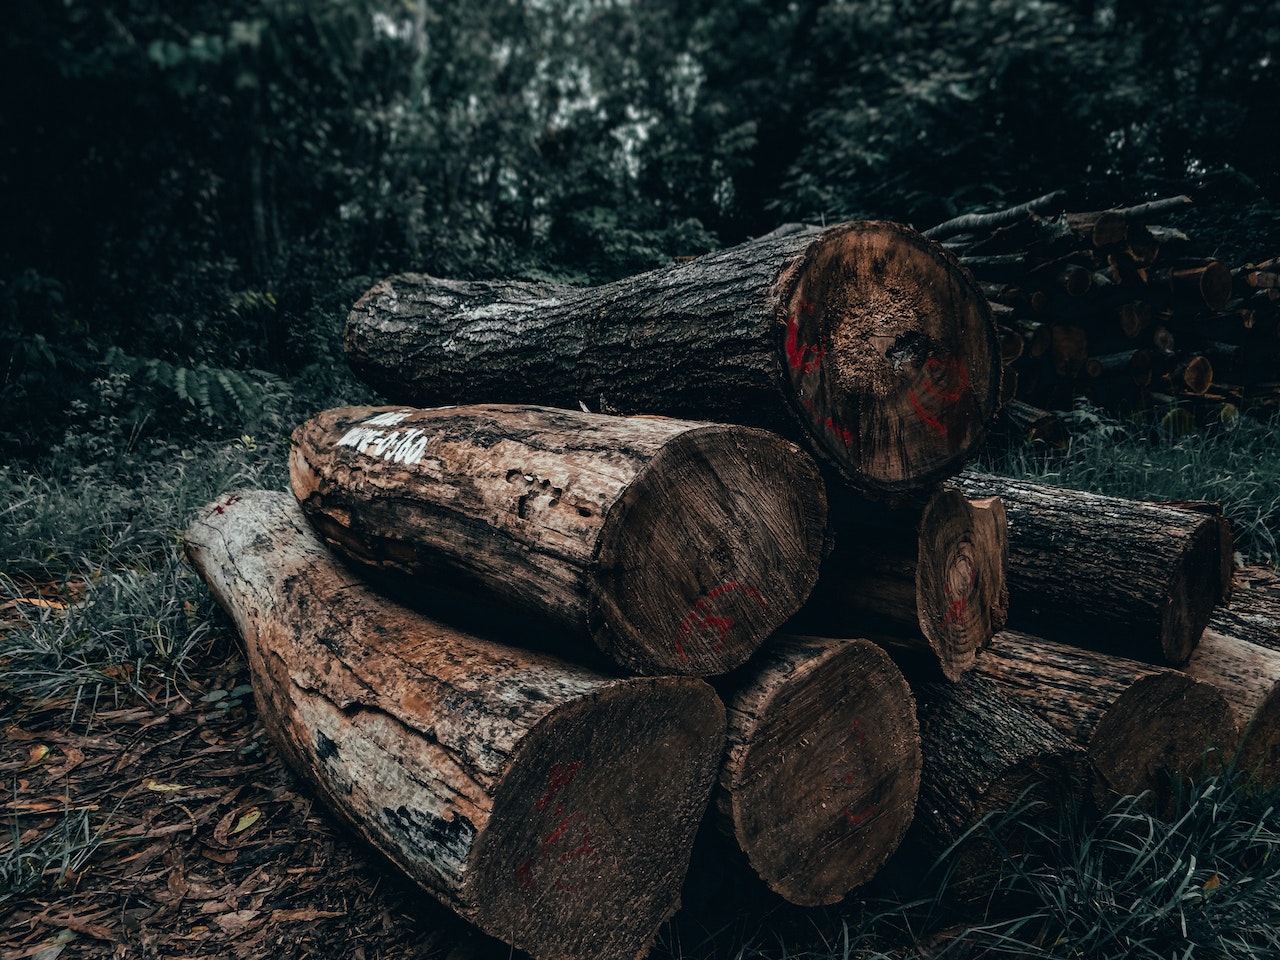 La UE perfila evitar importaciones de materias primas si causan deforestación